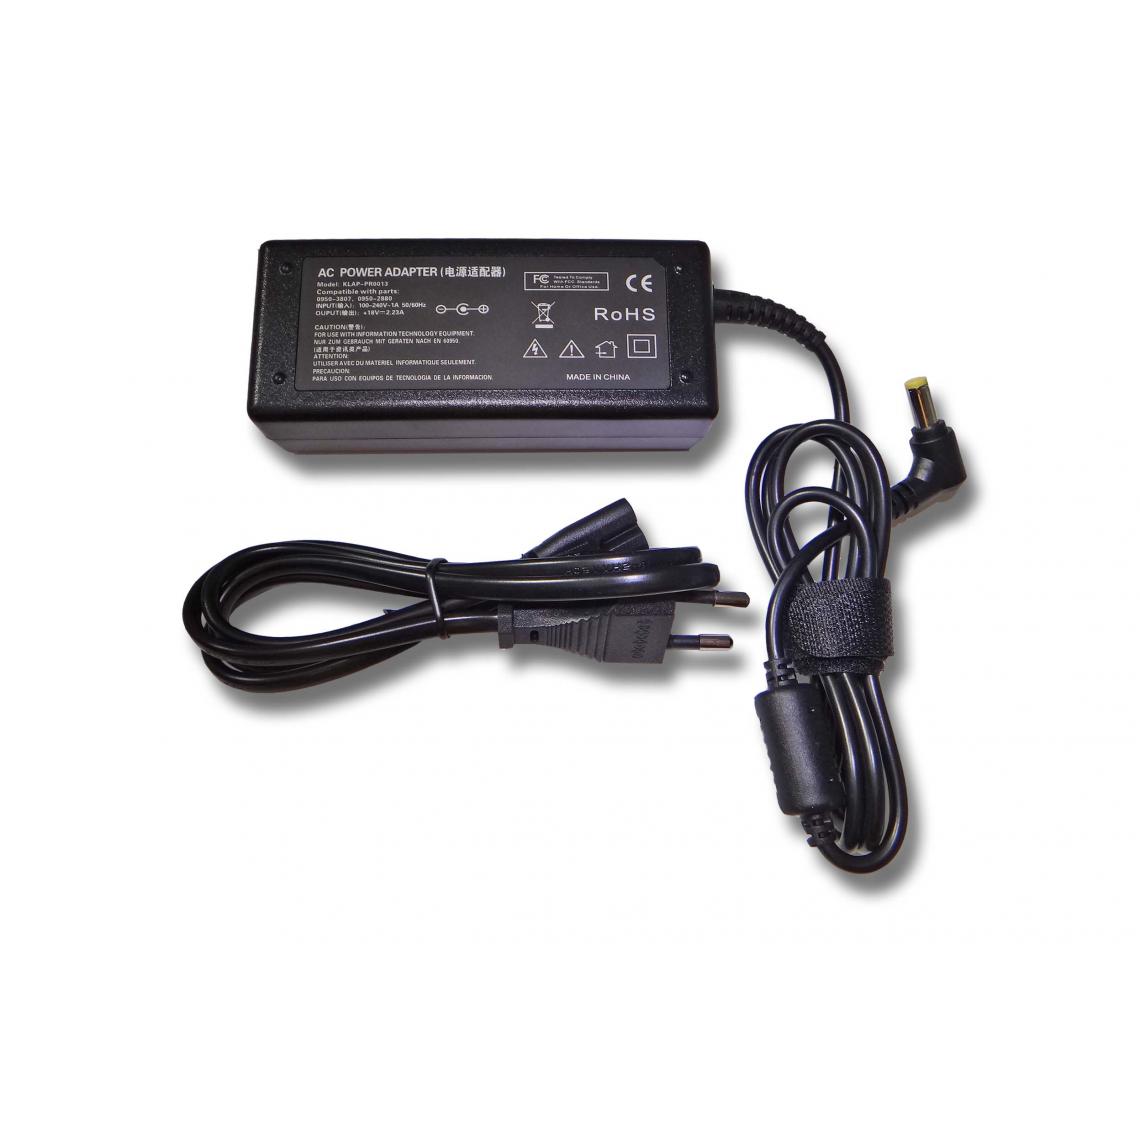 Vhbw - vhbw Imprimante Adaptateur bloc d'alimentation Câble d'alimentation Chargeur compatible avec HP Officejet T45, T45xi, T65, T65xi imprimante - 2.23A - Accessoires alimentation